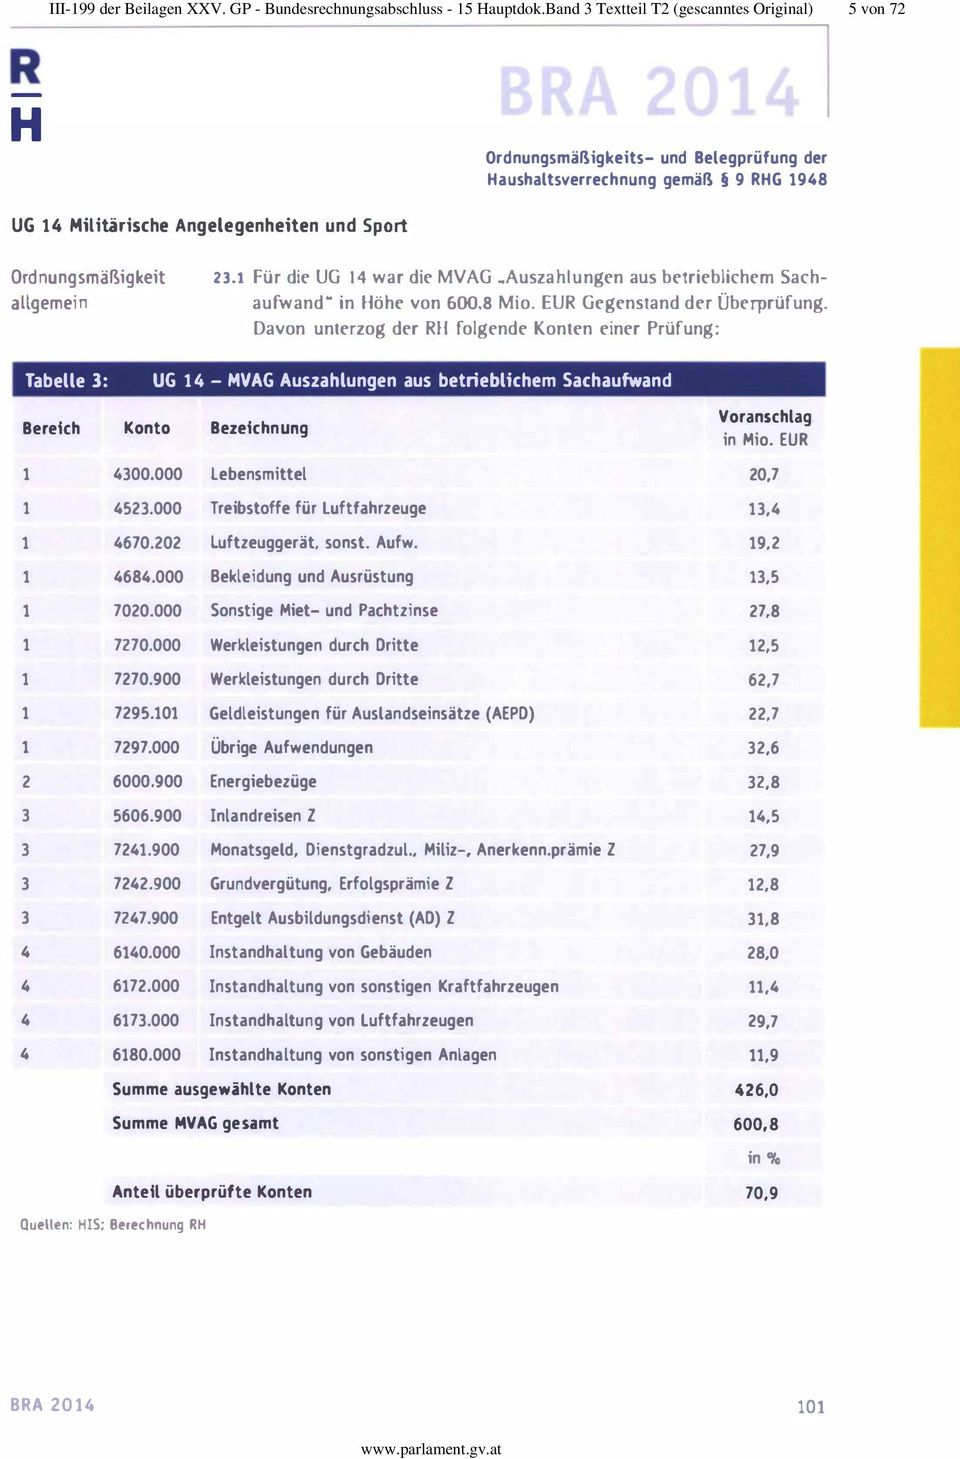 allgemein 23.1 Für die UG 14 war die MVAG..Auszahlungen aus betrieblichem 5achaufwand" in öhe von 600.8 Mio. EU Gegenstand der Überprüfung.